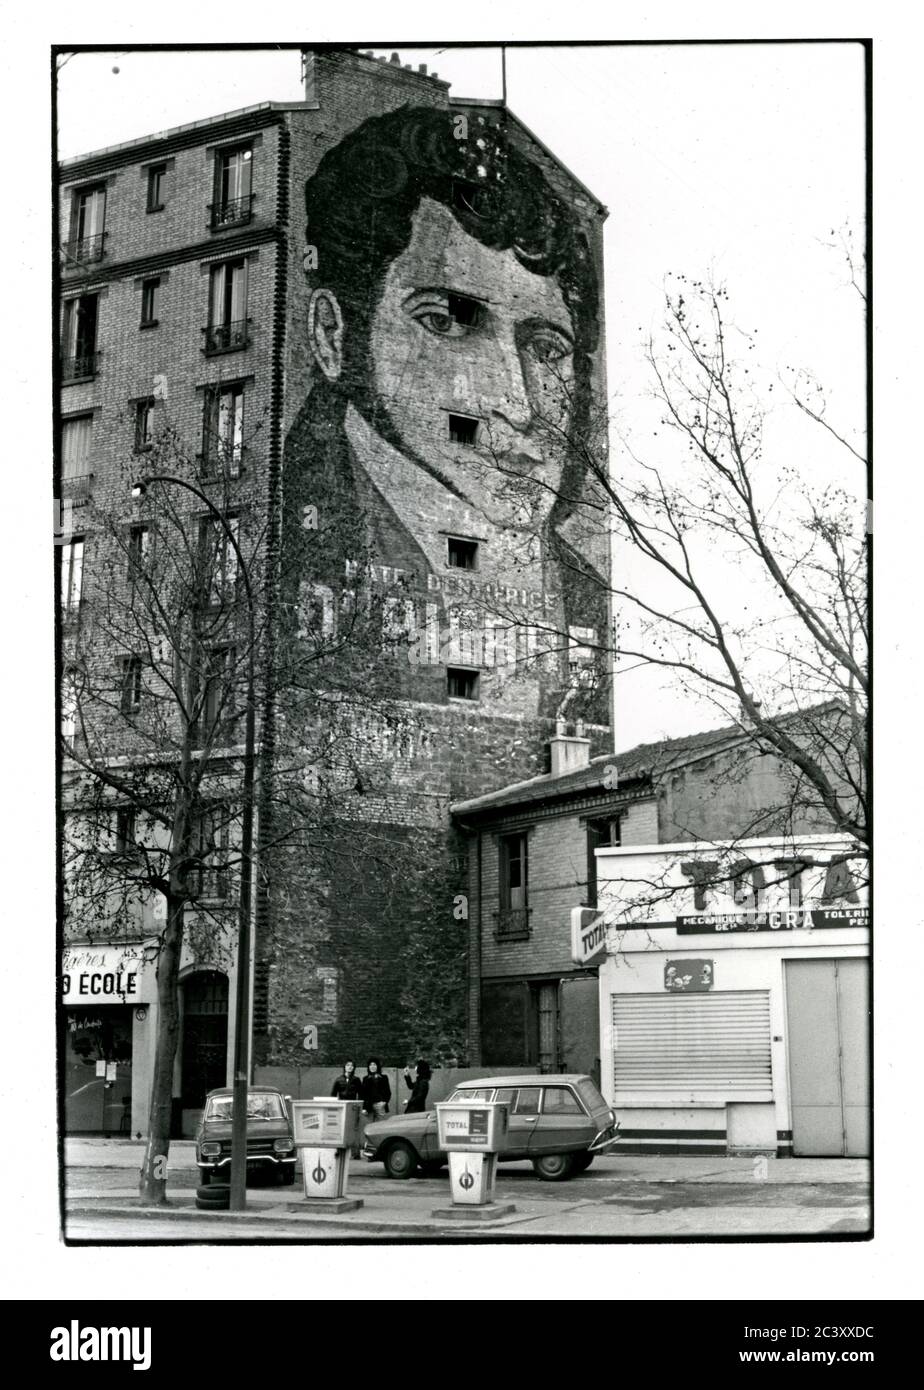 Mur publicitaire géant appoché pour pâte dentaire dans la banlieue de Paris, France vers 1974 Banque D'Images